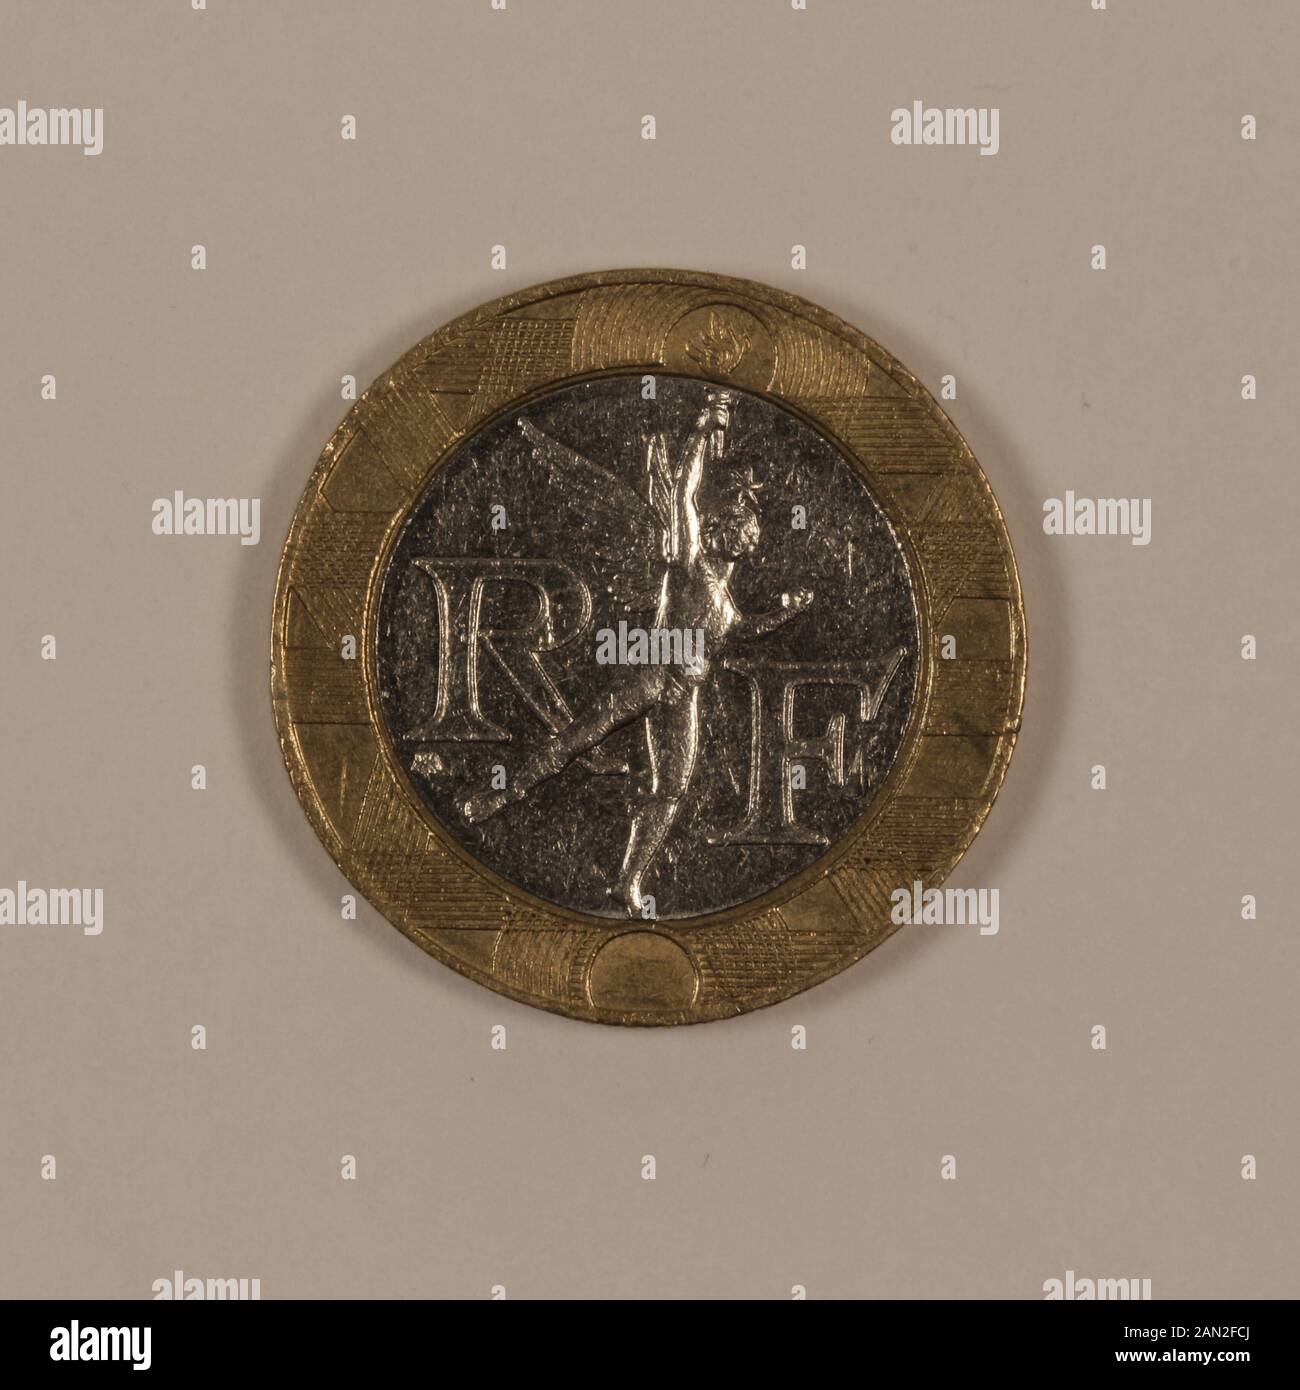 Rückseite einer ehemaligen Französischen 10 Franc Münze Foto Stock